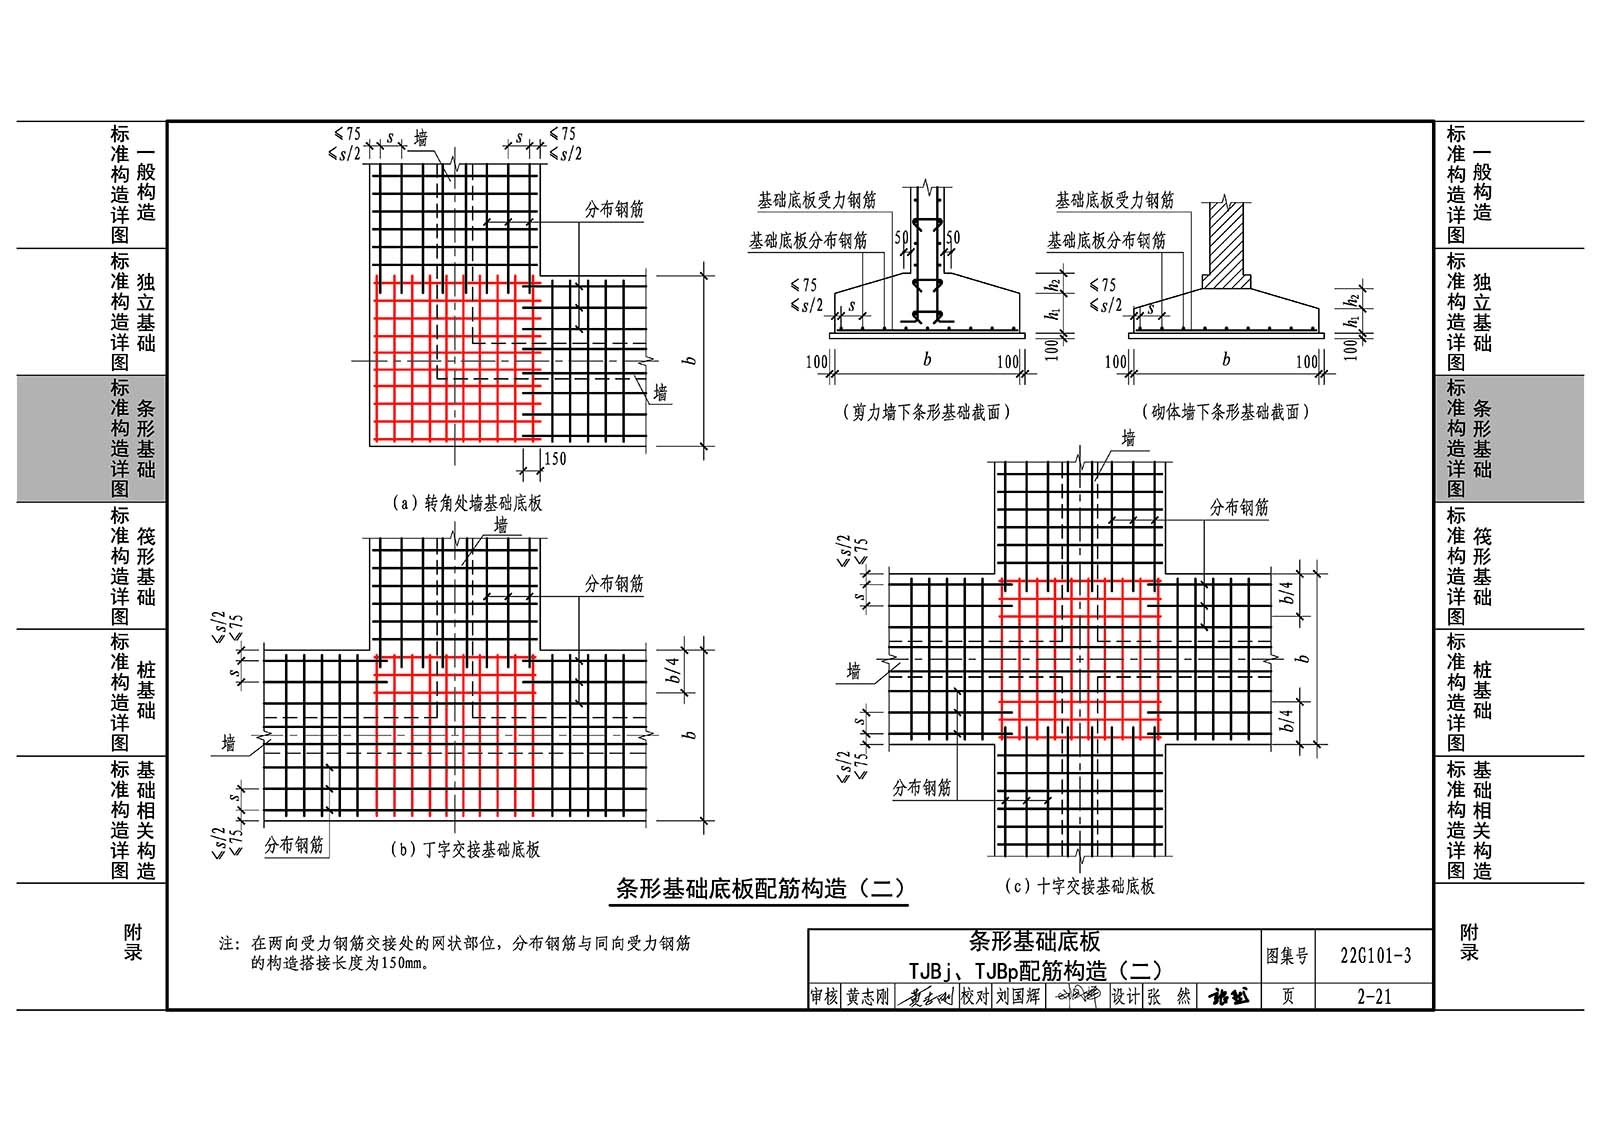 22G101-3：混凝土结构施工图平面整体表示方法制图规则和构造详图（独立基础、条形基础、筏形基础、桩基础）